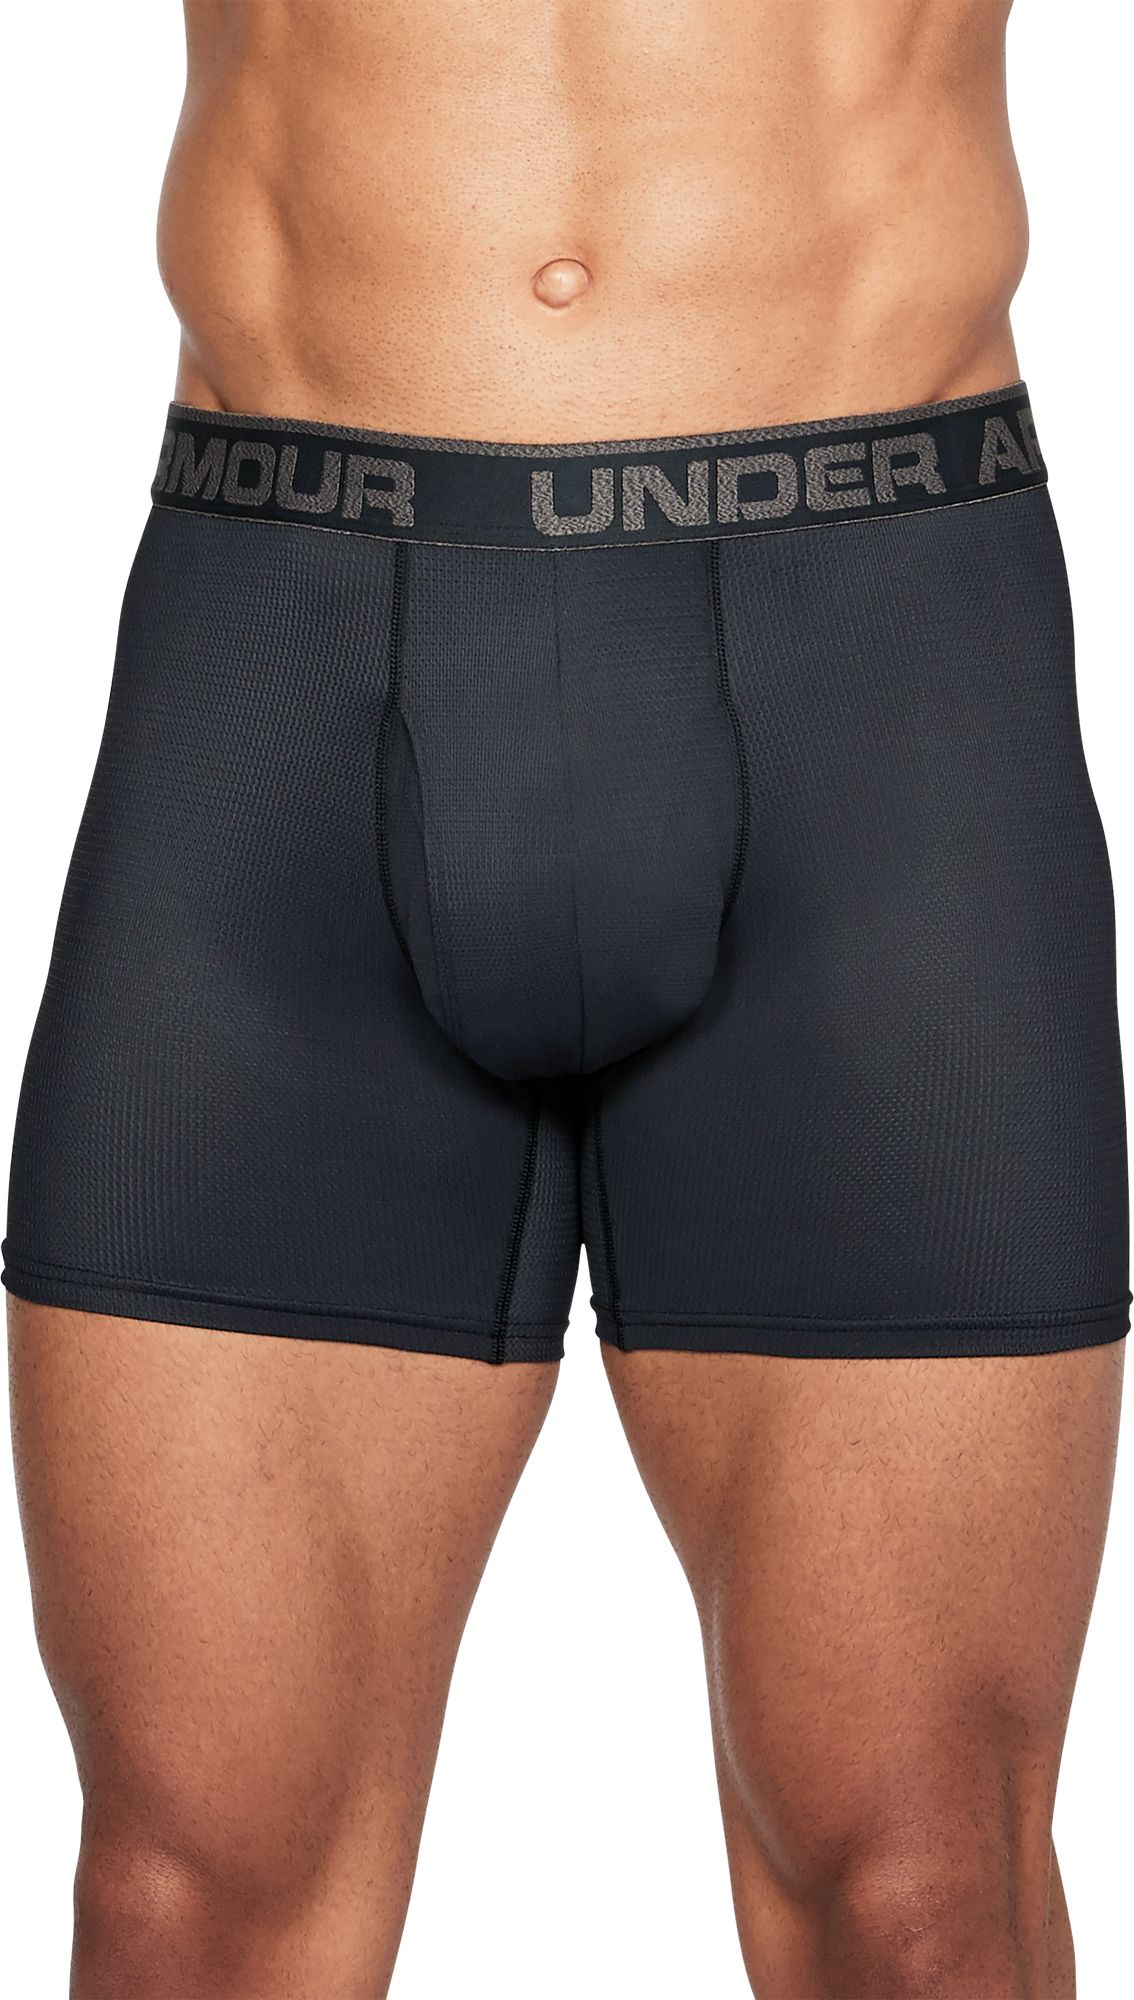 ua underwear